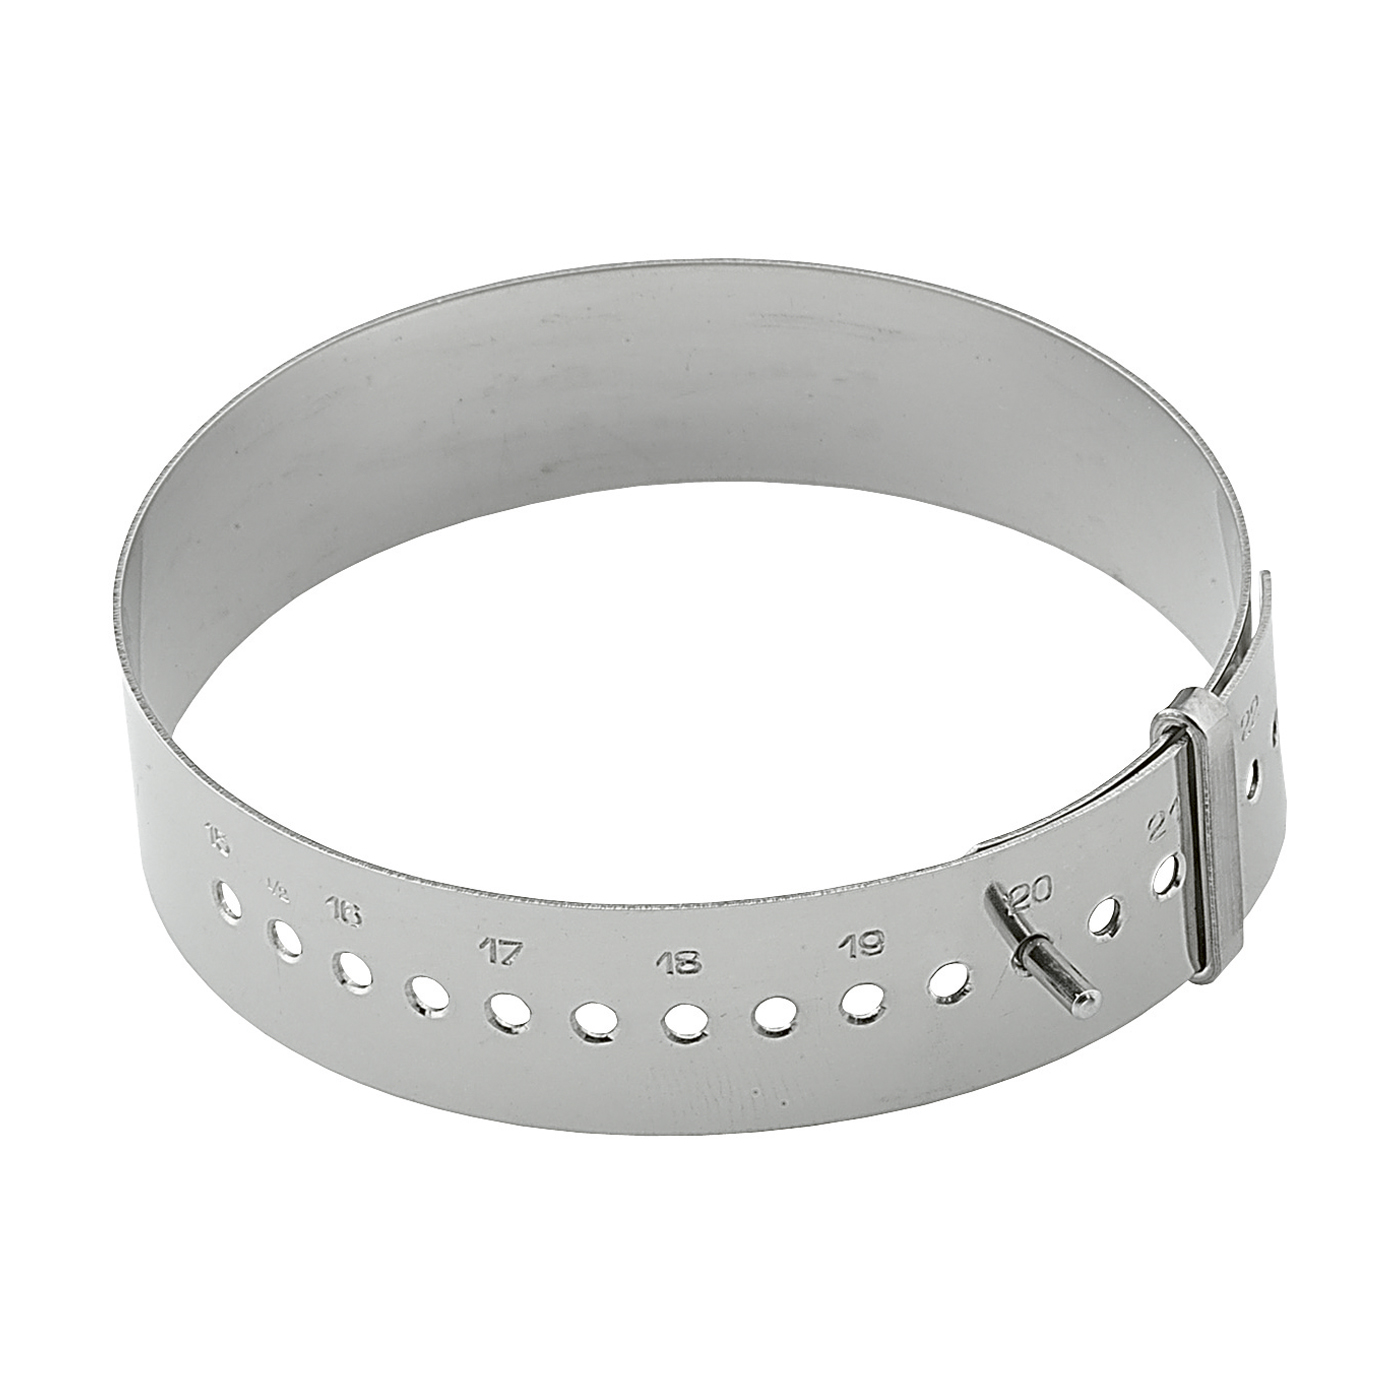 Bracelet Gauge - 1 piece